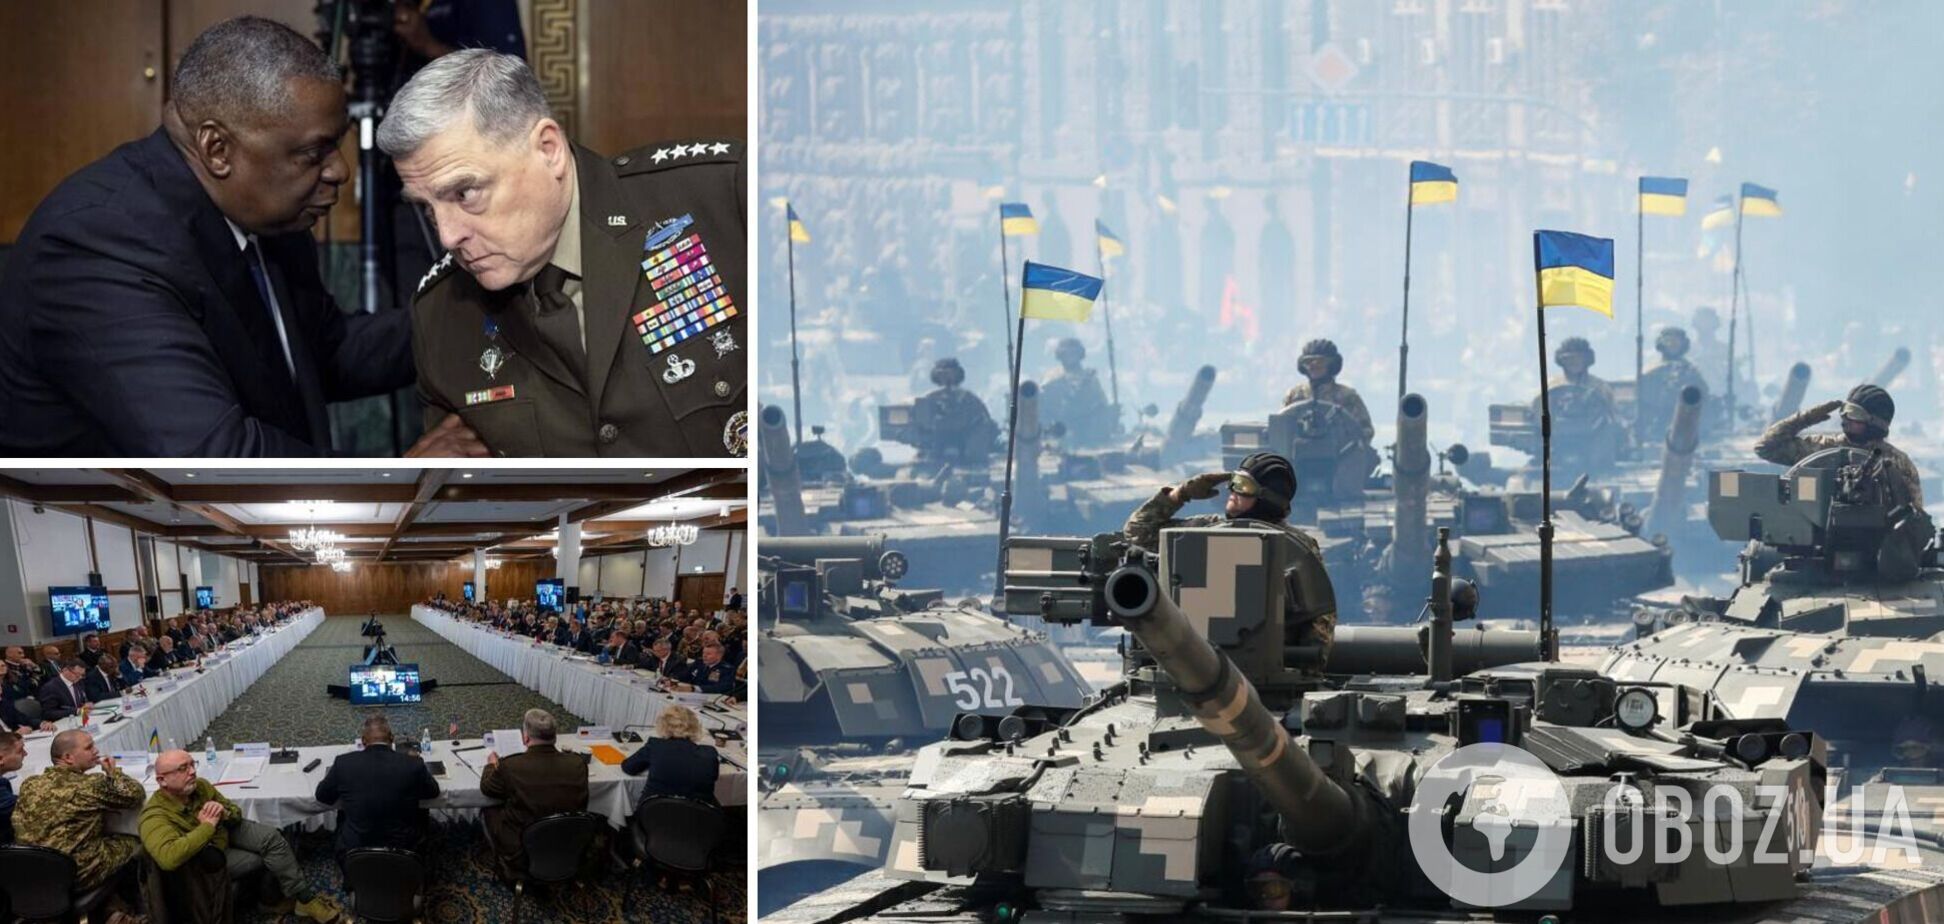 НАТО поставит столько оружия в Украину, сколько нужно: Бутусов заявил, что ВСУ могут освободить Крым и Донбасс